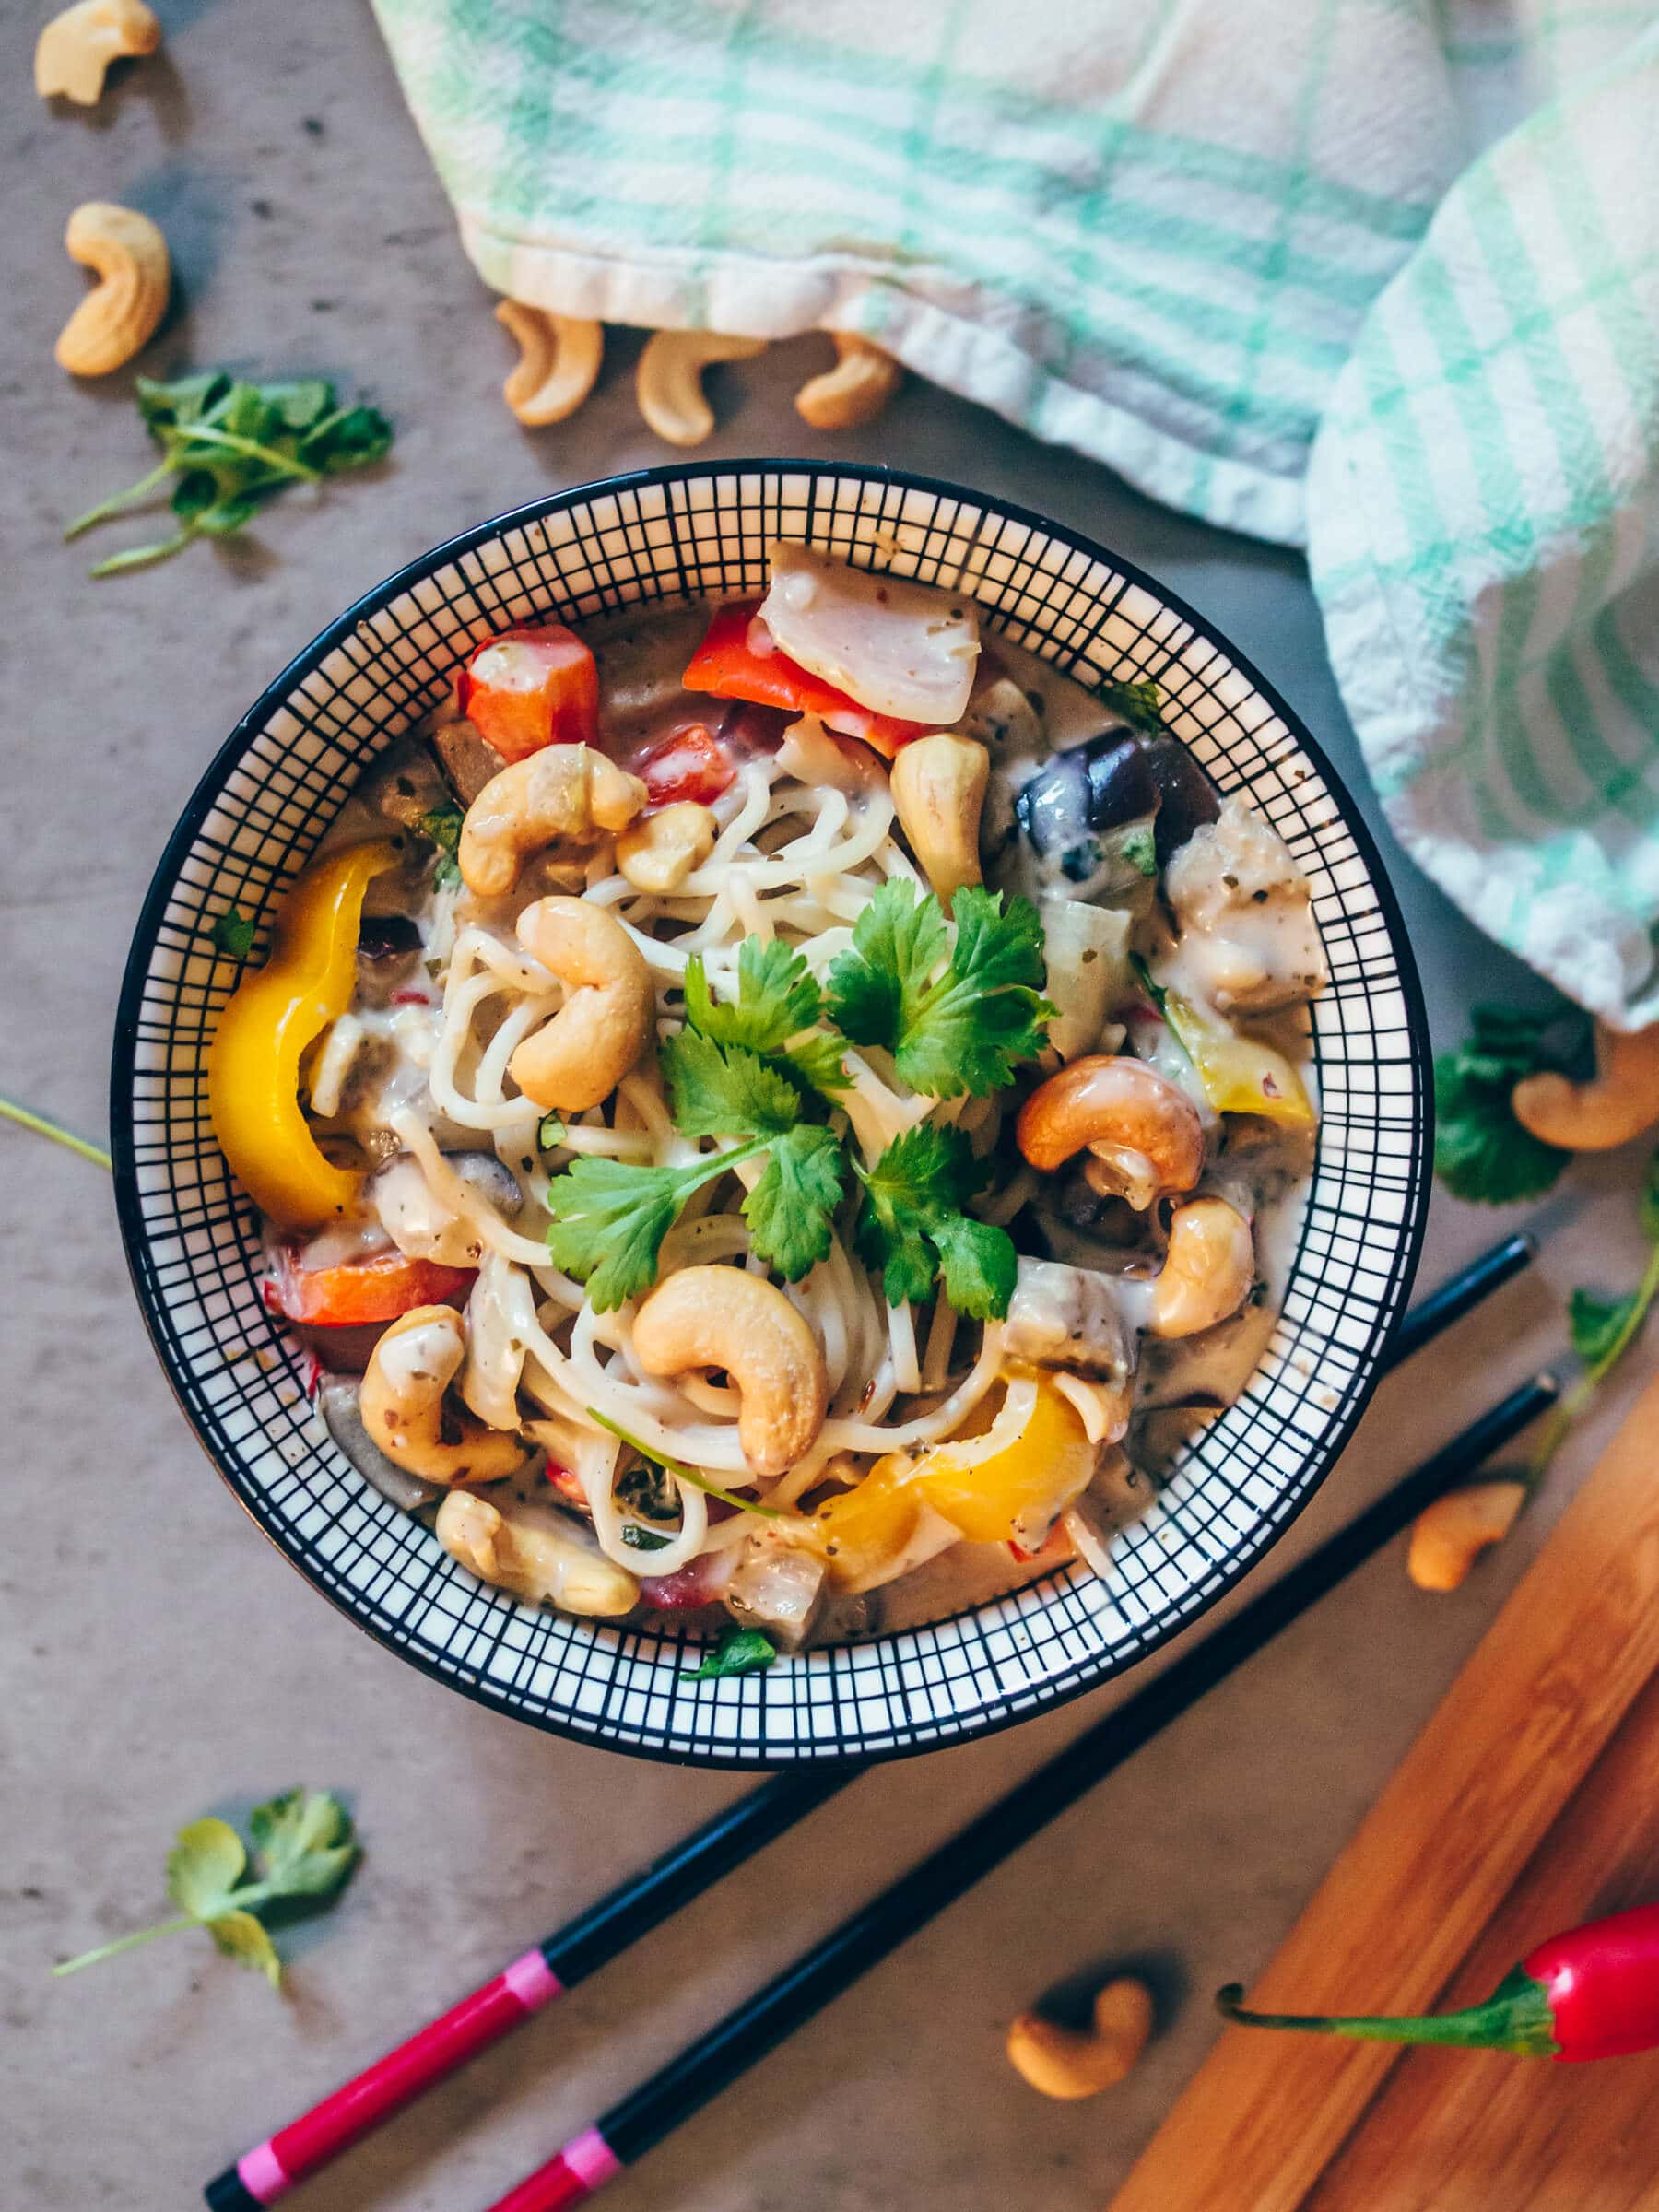 Thai inspired coconut & coriander noodle bowl - Quick & easy vegan recipe